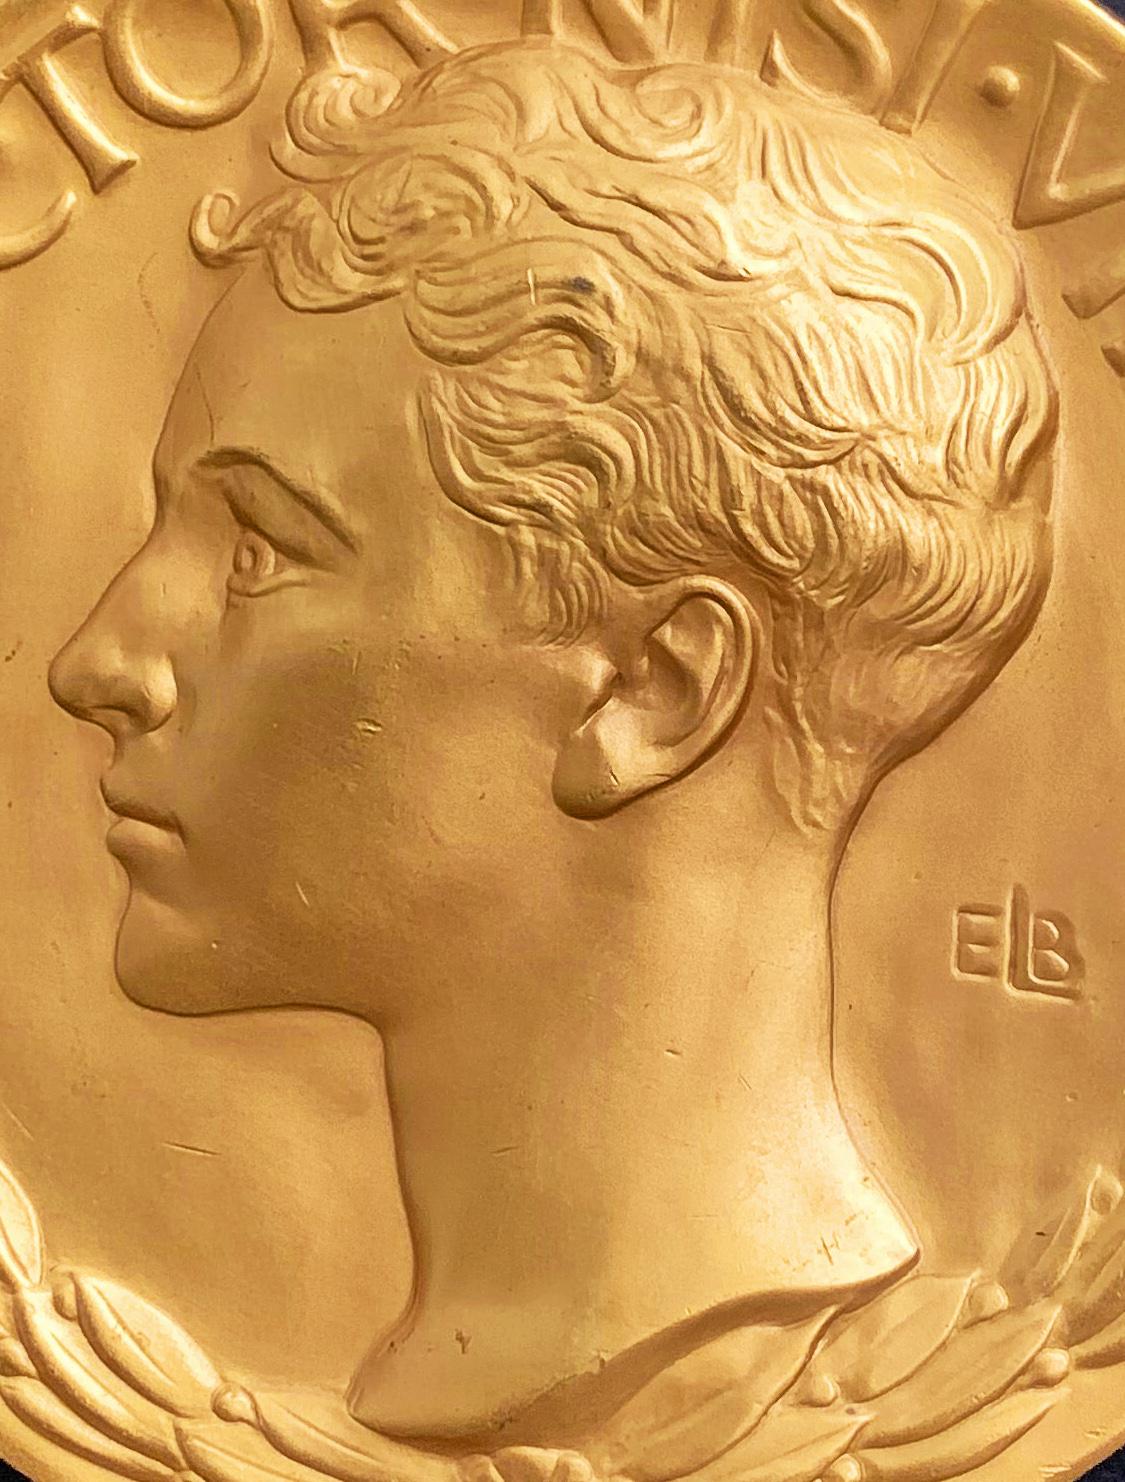 Exemple important et extrêmement rare de sculpture américaine en bas-relief, cette médaille en bronze plaqué or a été sculptée par Evelyn Beatrice Longman pour le prix Loomis Athletic sponsorisé par la Loomis School de Windsor, dans le Connecticut.